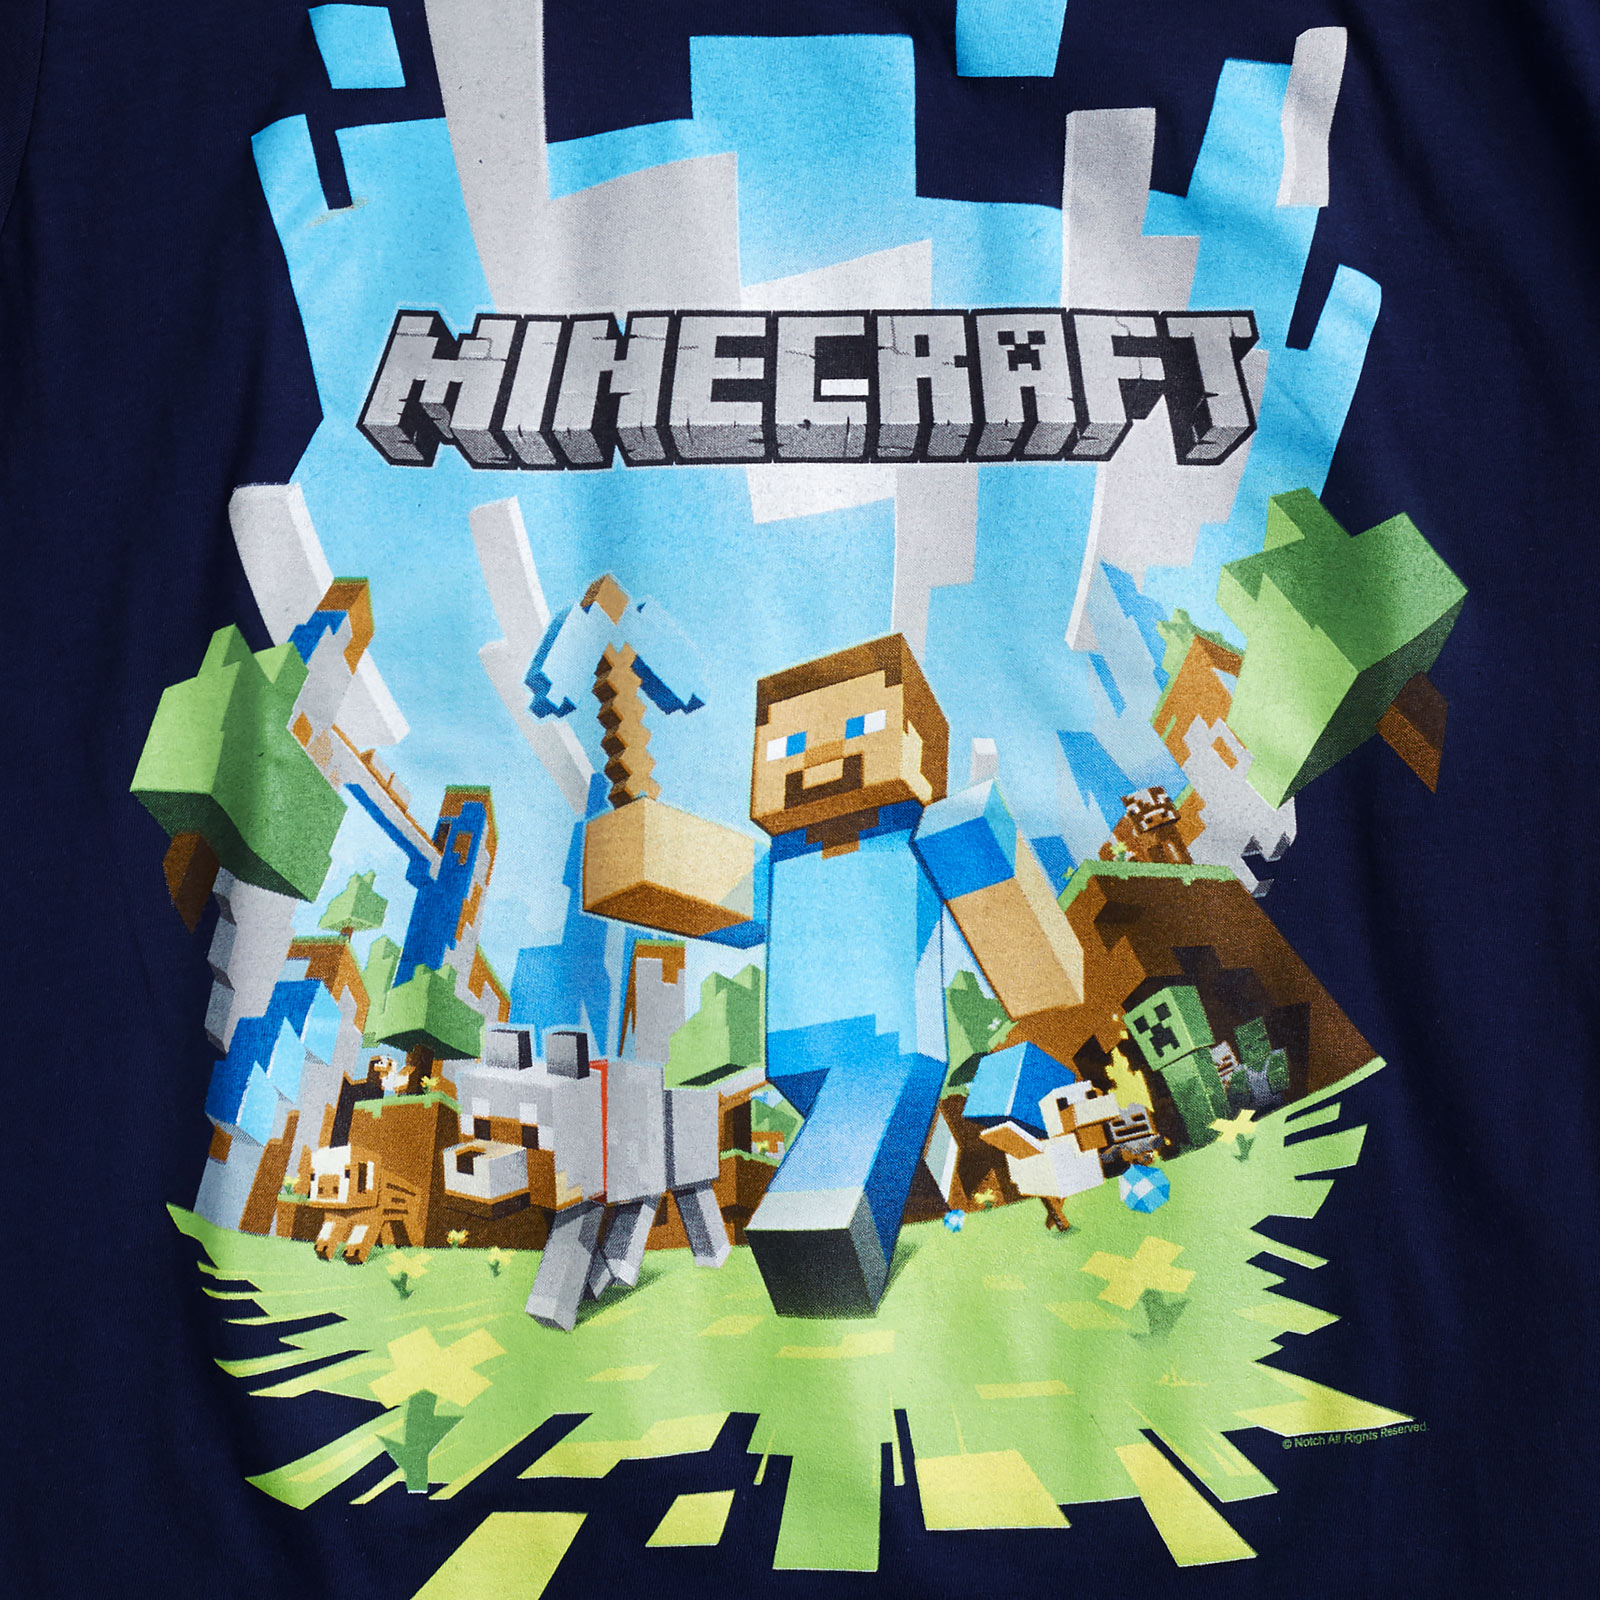 Minecraft - T-shirt Aventure Homme